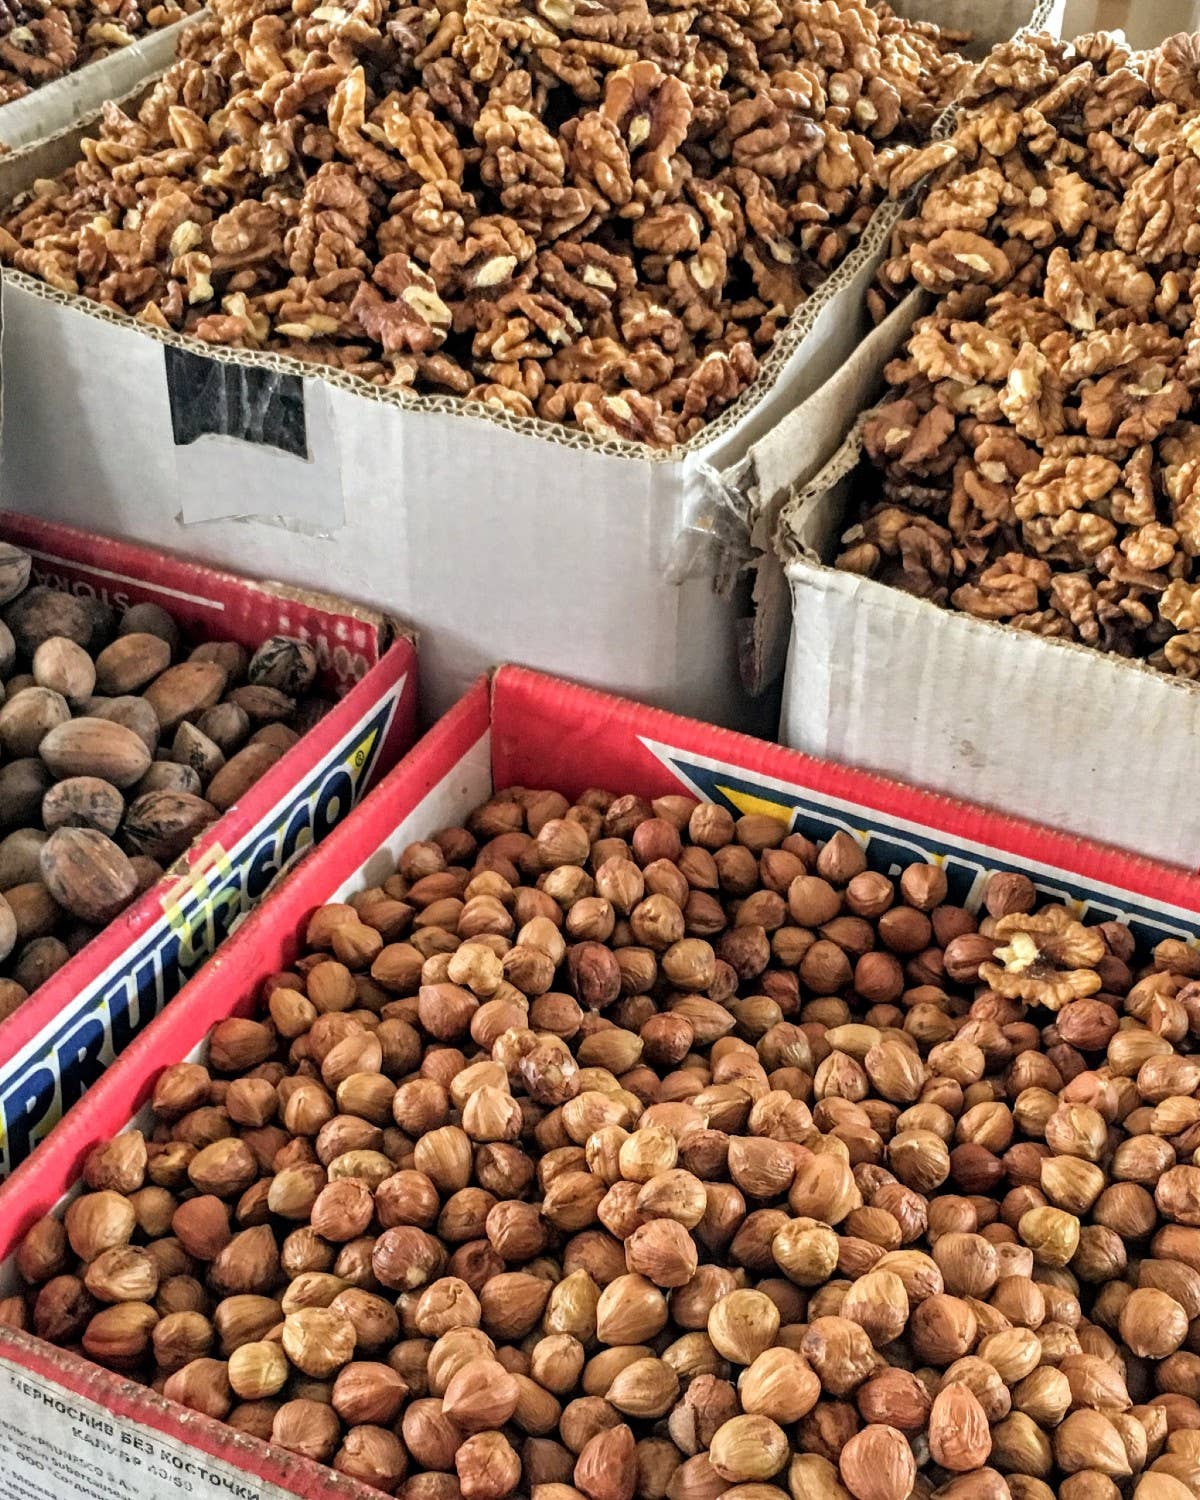 Georgian Walnuts at Market